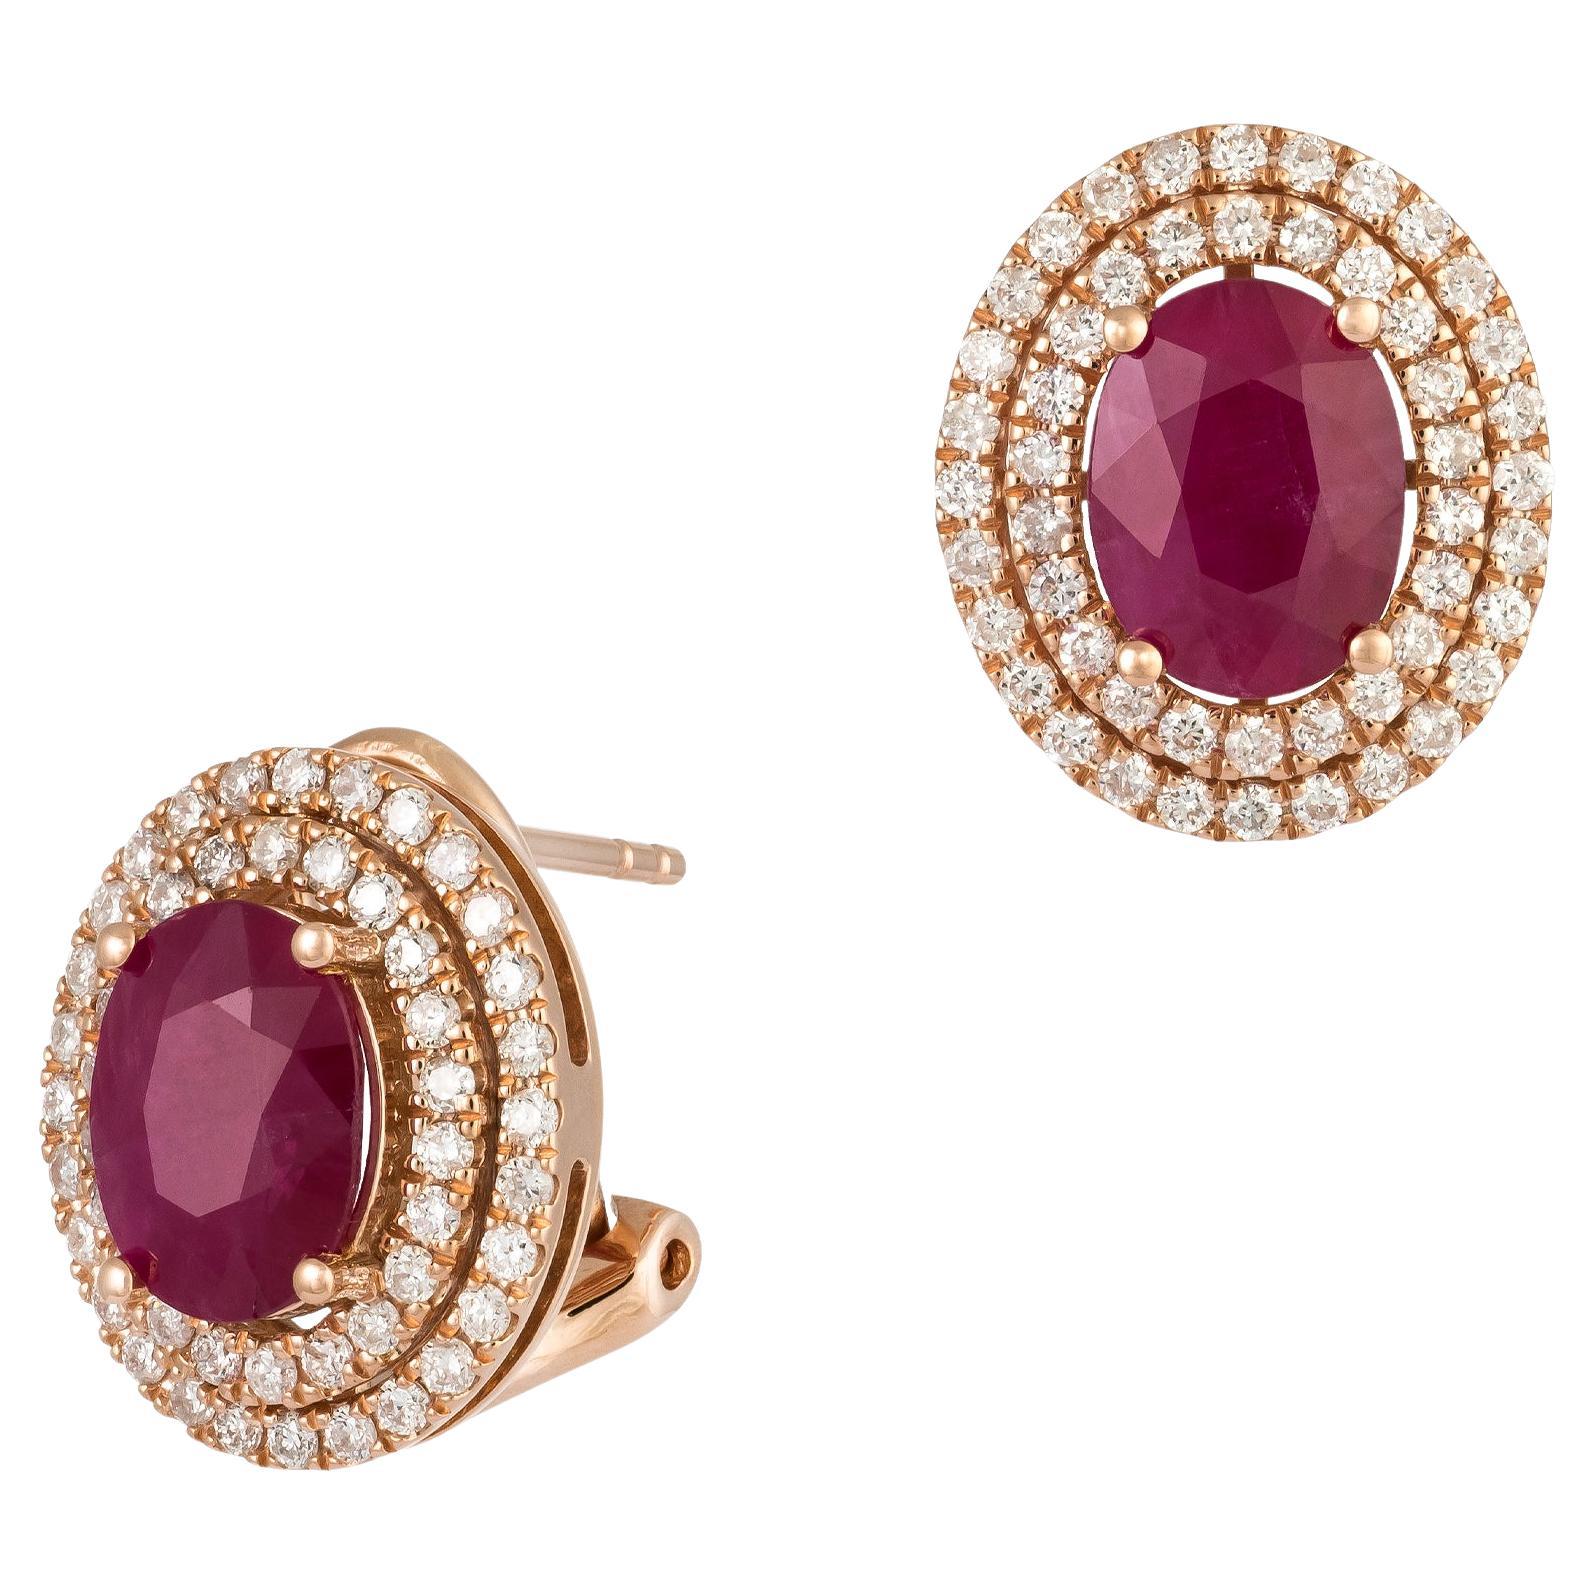 Modern Pink Gold 18K Earrings Ruby Diamond For Her